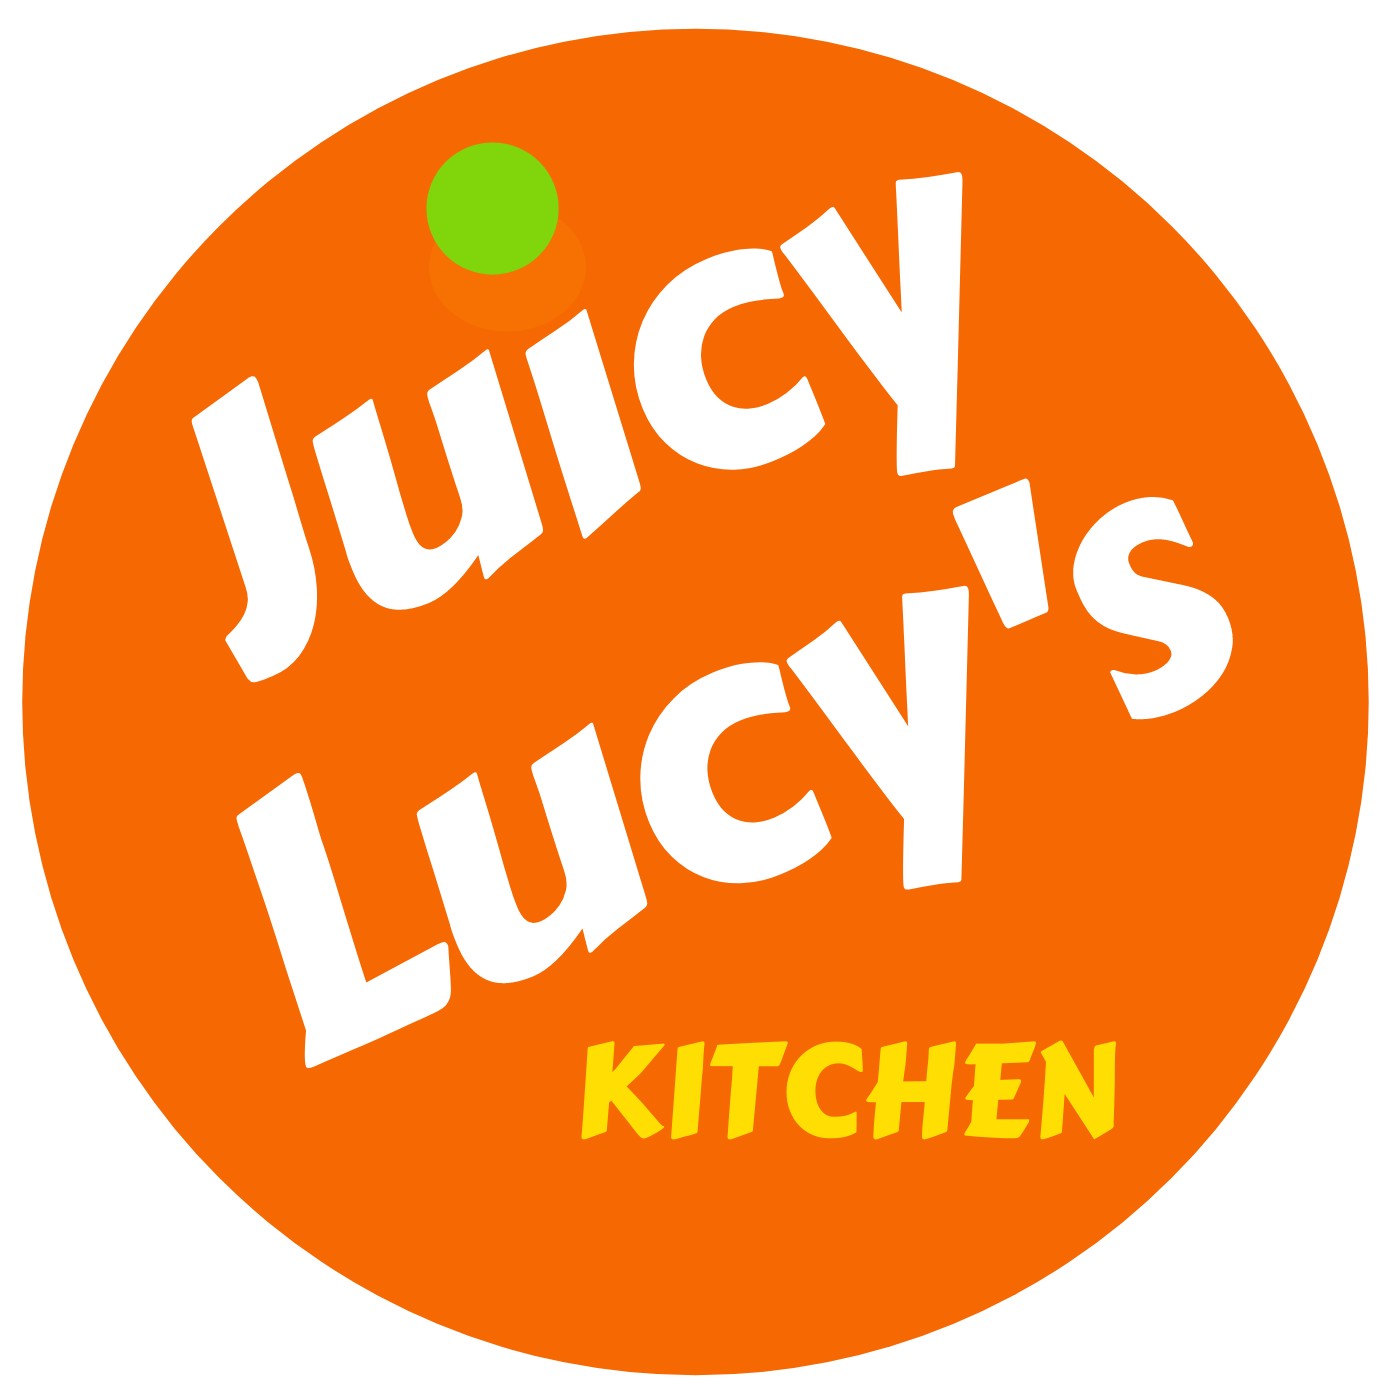 Kitchen lucy Lucy Kitchen